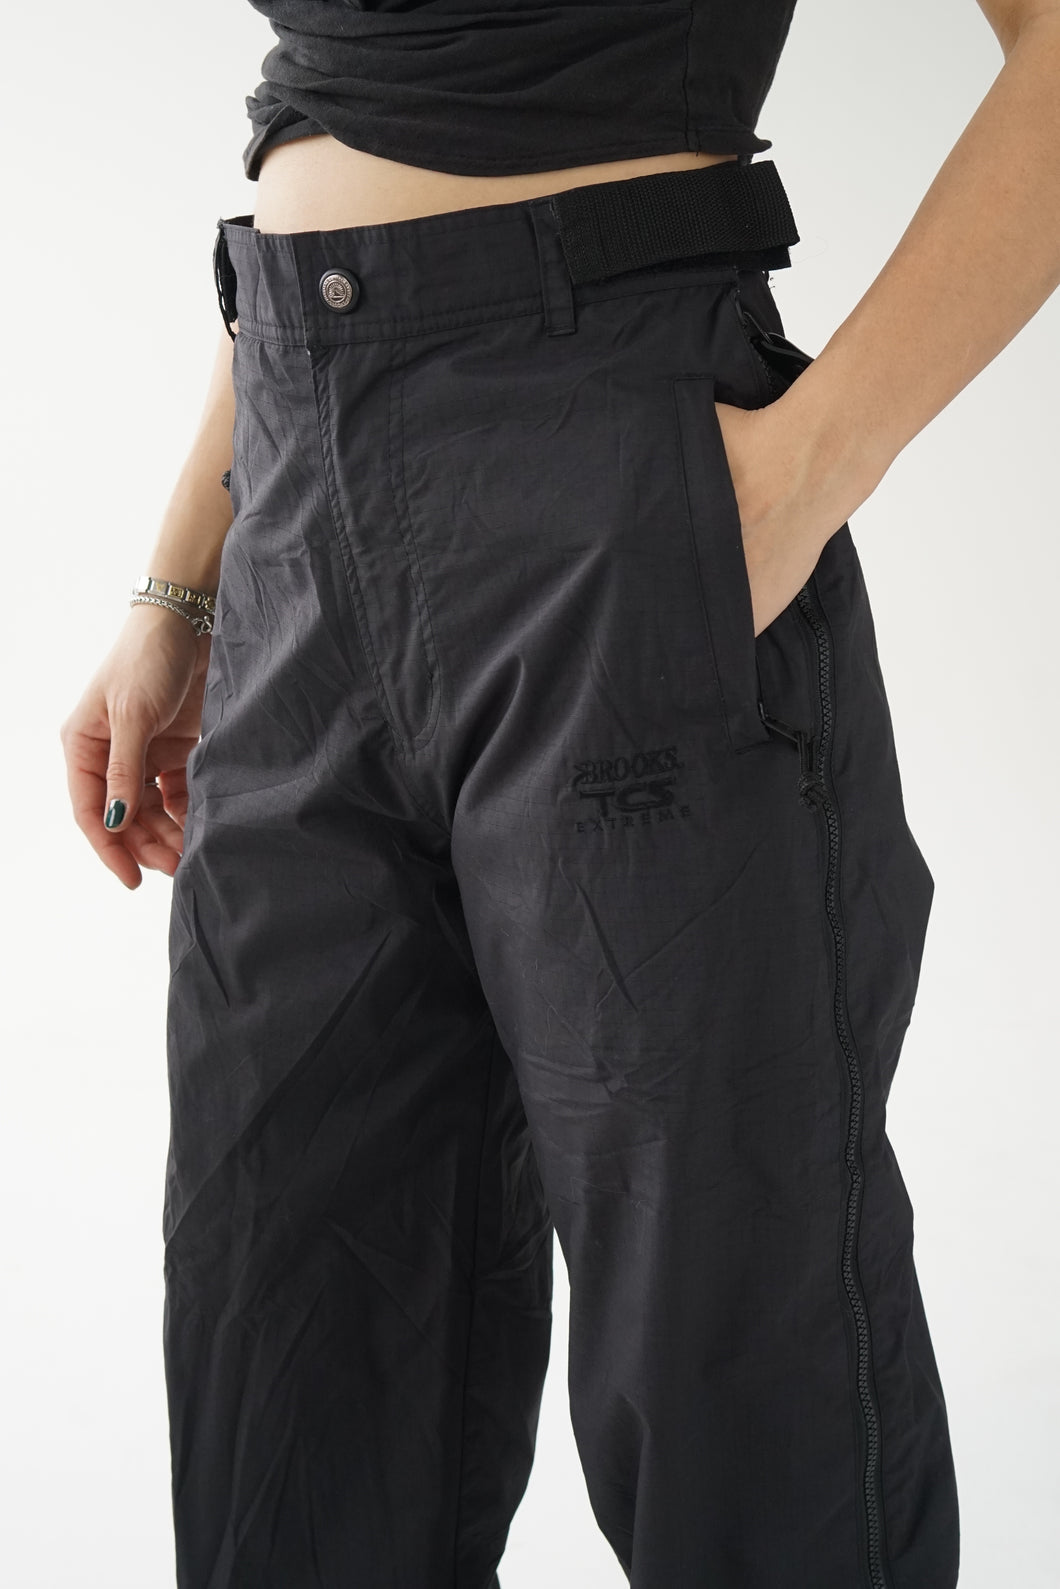 Pantalon de neige vintage Brooks ajustable noir unisexe taille S